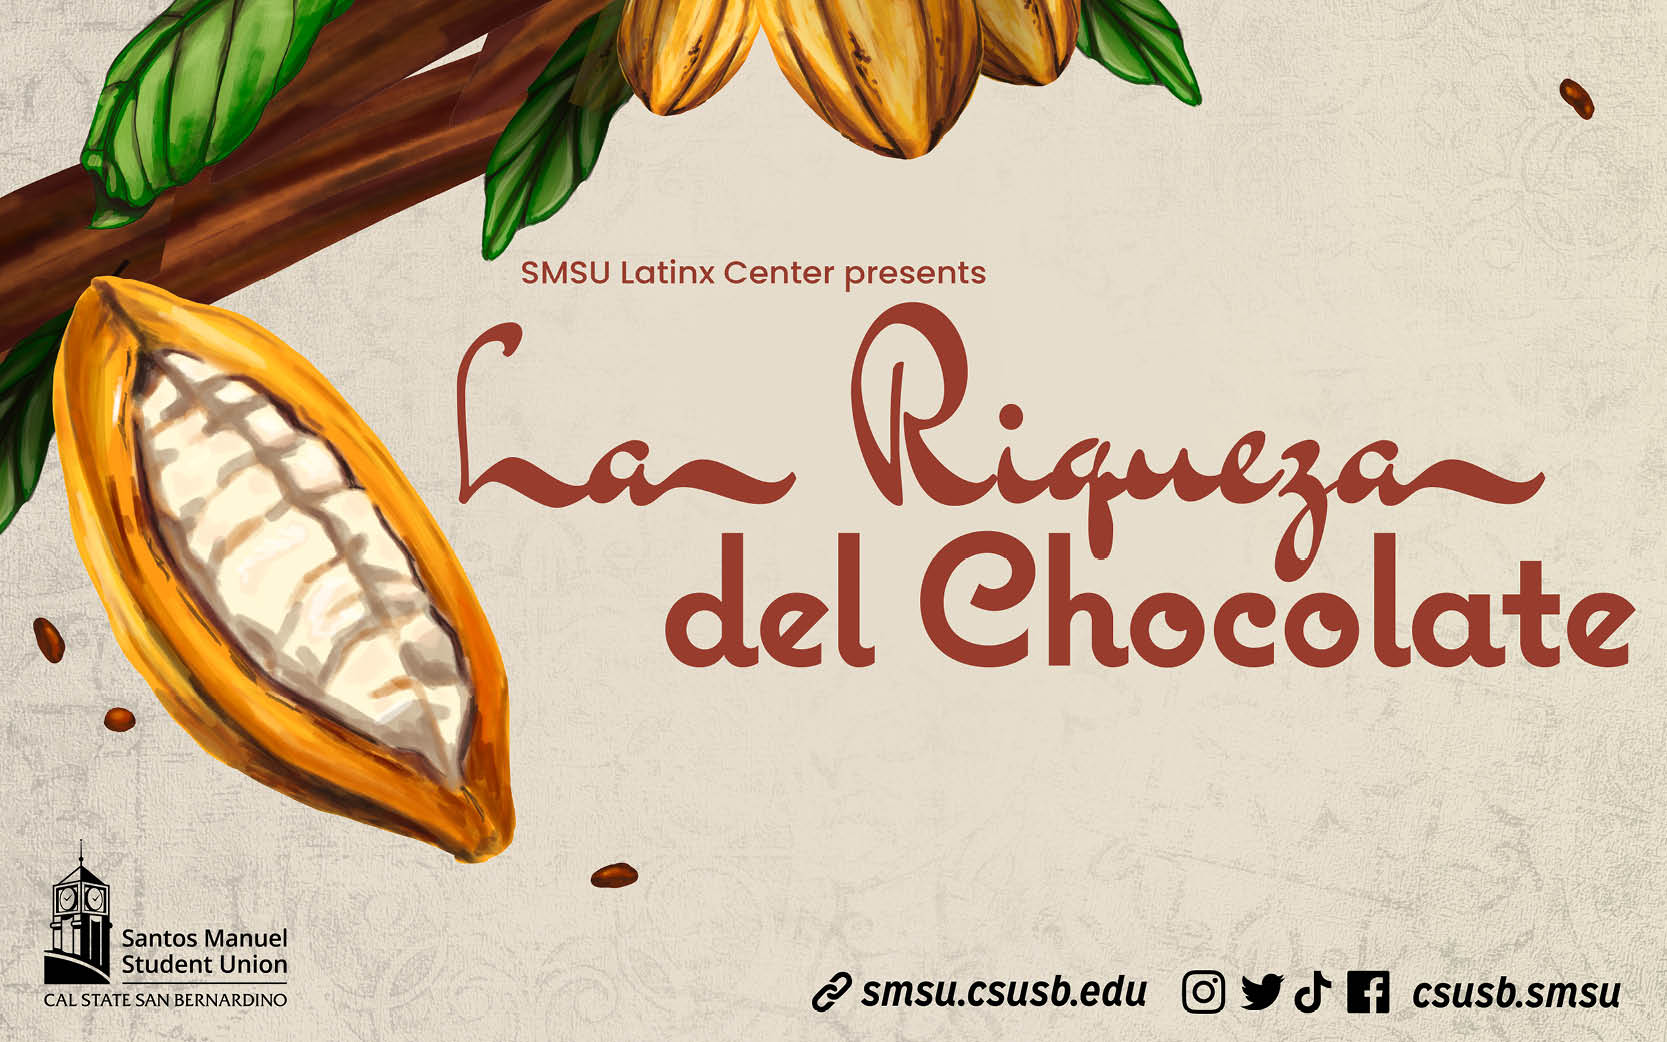 Graphic of cocoa fruit on tree branch.  Graphic reads: SMSU Latinx Center Presents La Riqueza del Chocolate.